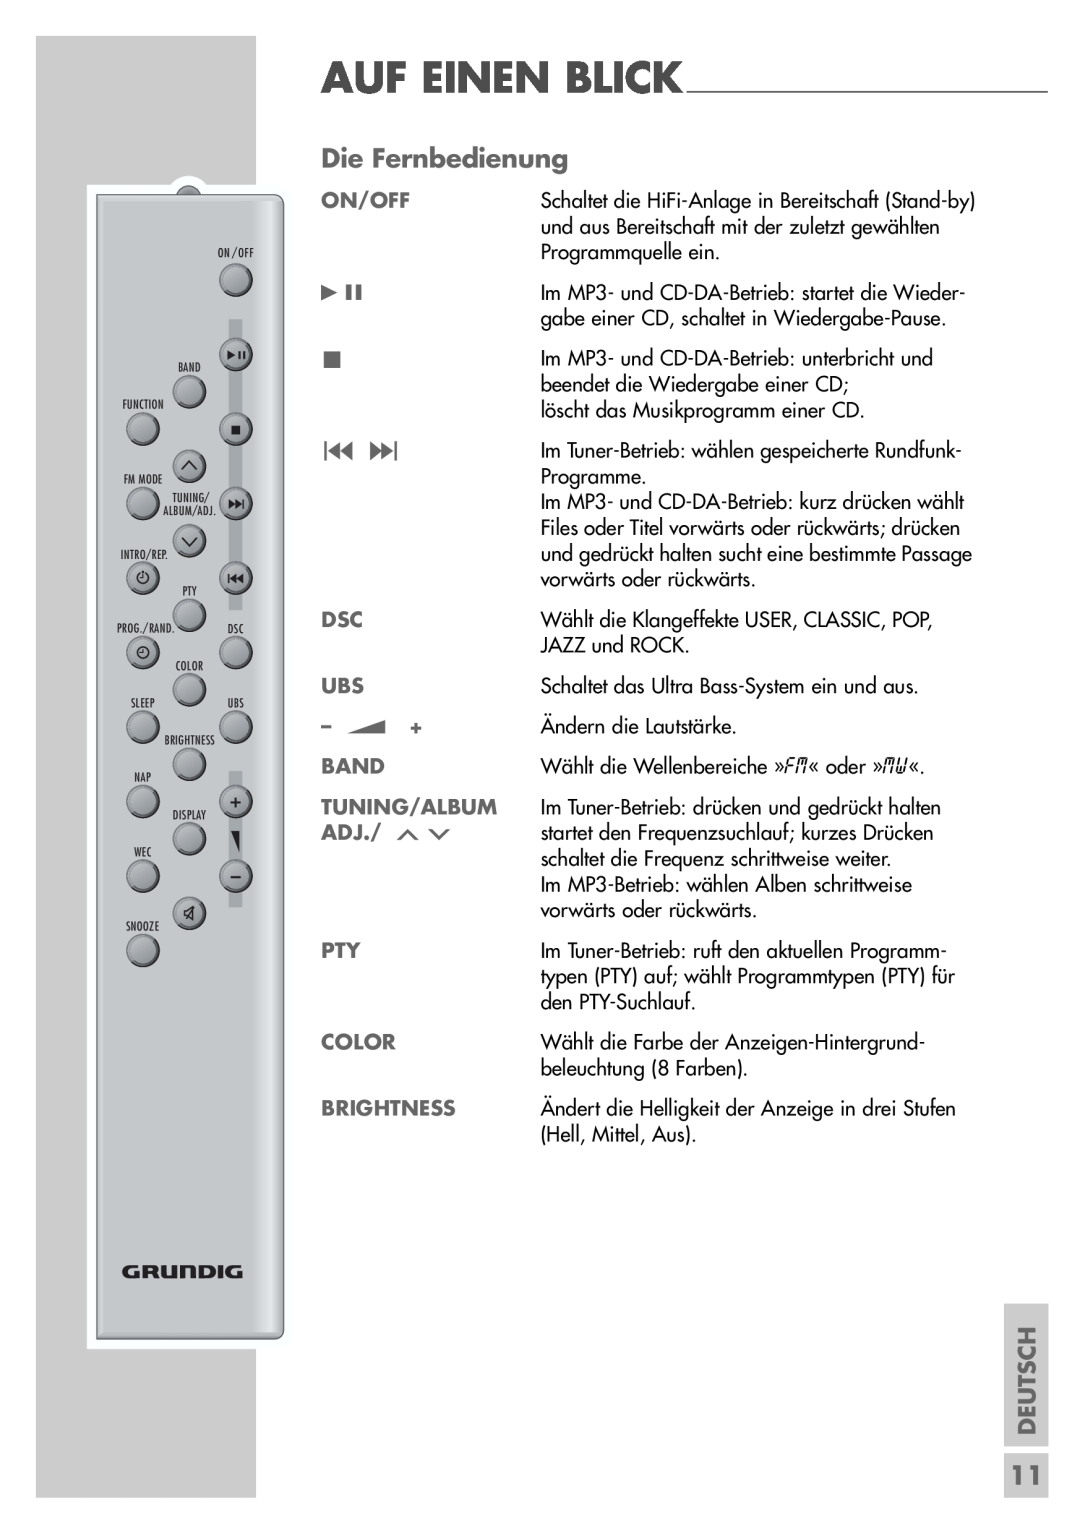 Grundig UMS 5400 DEC manual Die Fernbedienung, Color, Brightness, Deutsch, Auf Einen Blick, On/Off, +, Band, Tuning/Album 